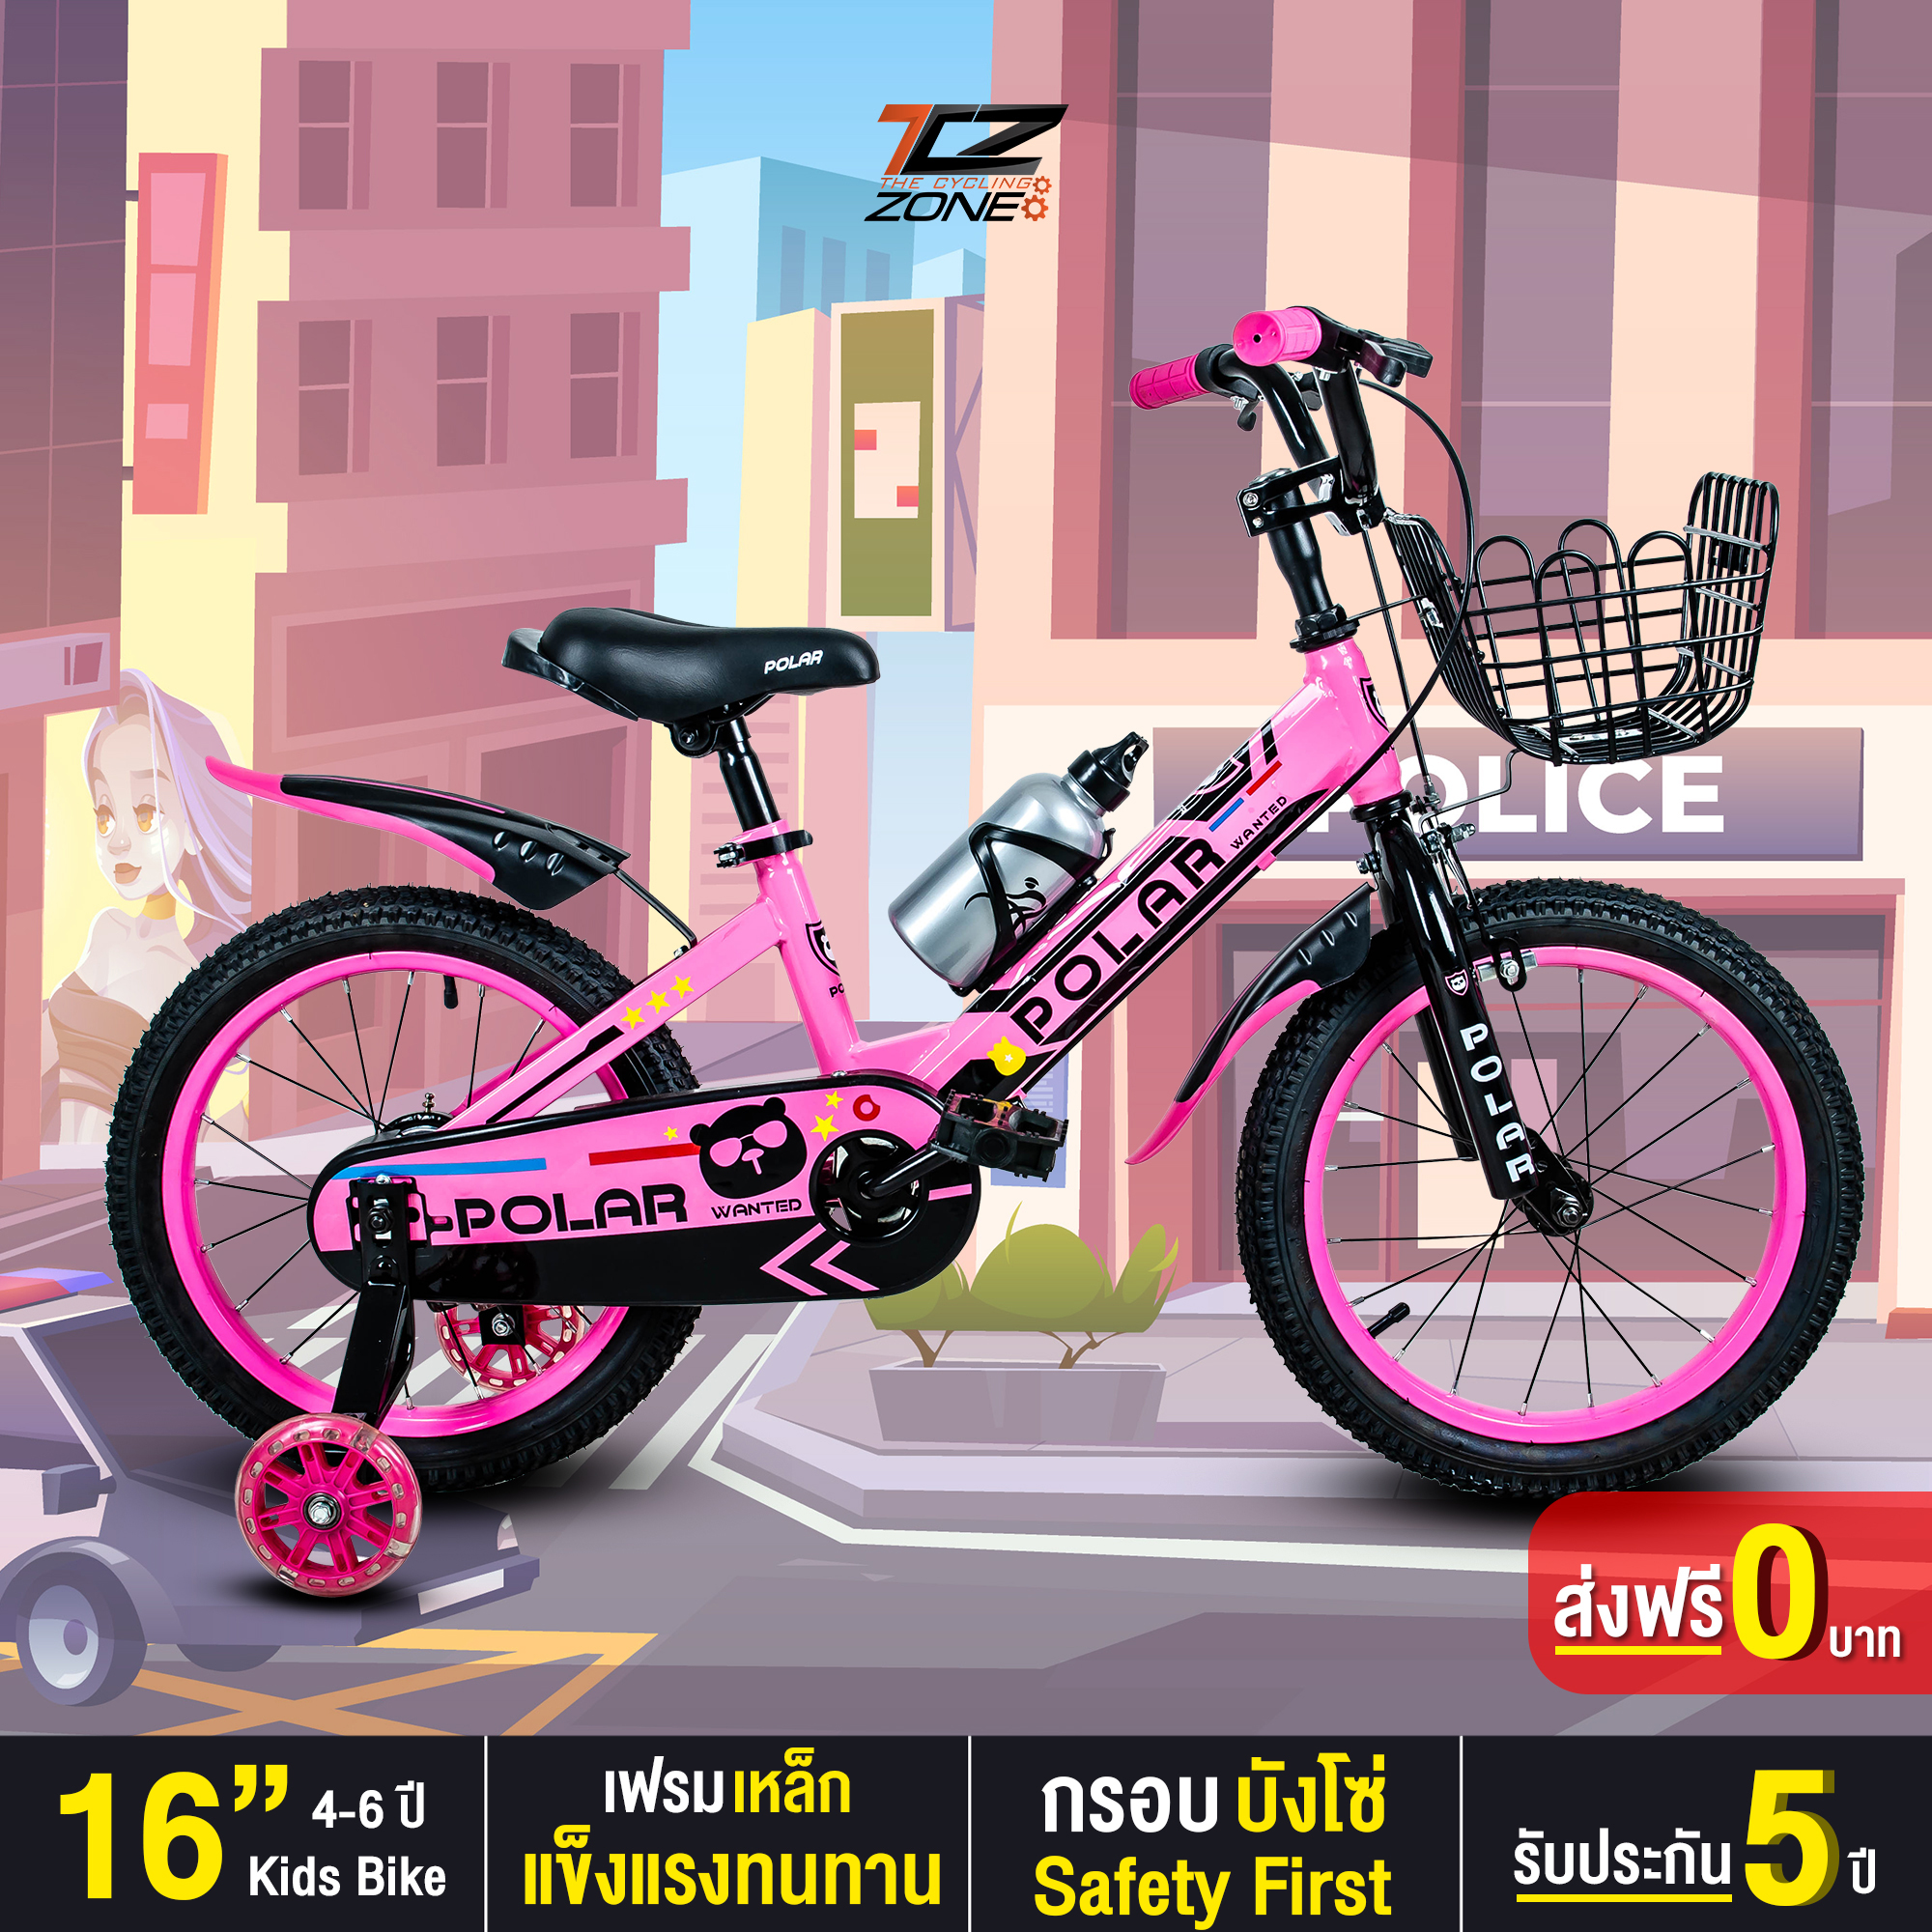 จักรยานเด็ก  POLAR ขนาด 16 นิ้ว แข็งแรงปลอดภัย สีสันสวยงาม รุ่น WANTED คละสี The Cycling Zone